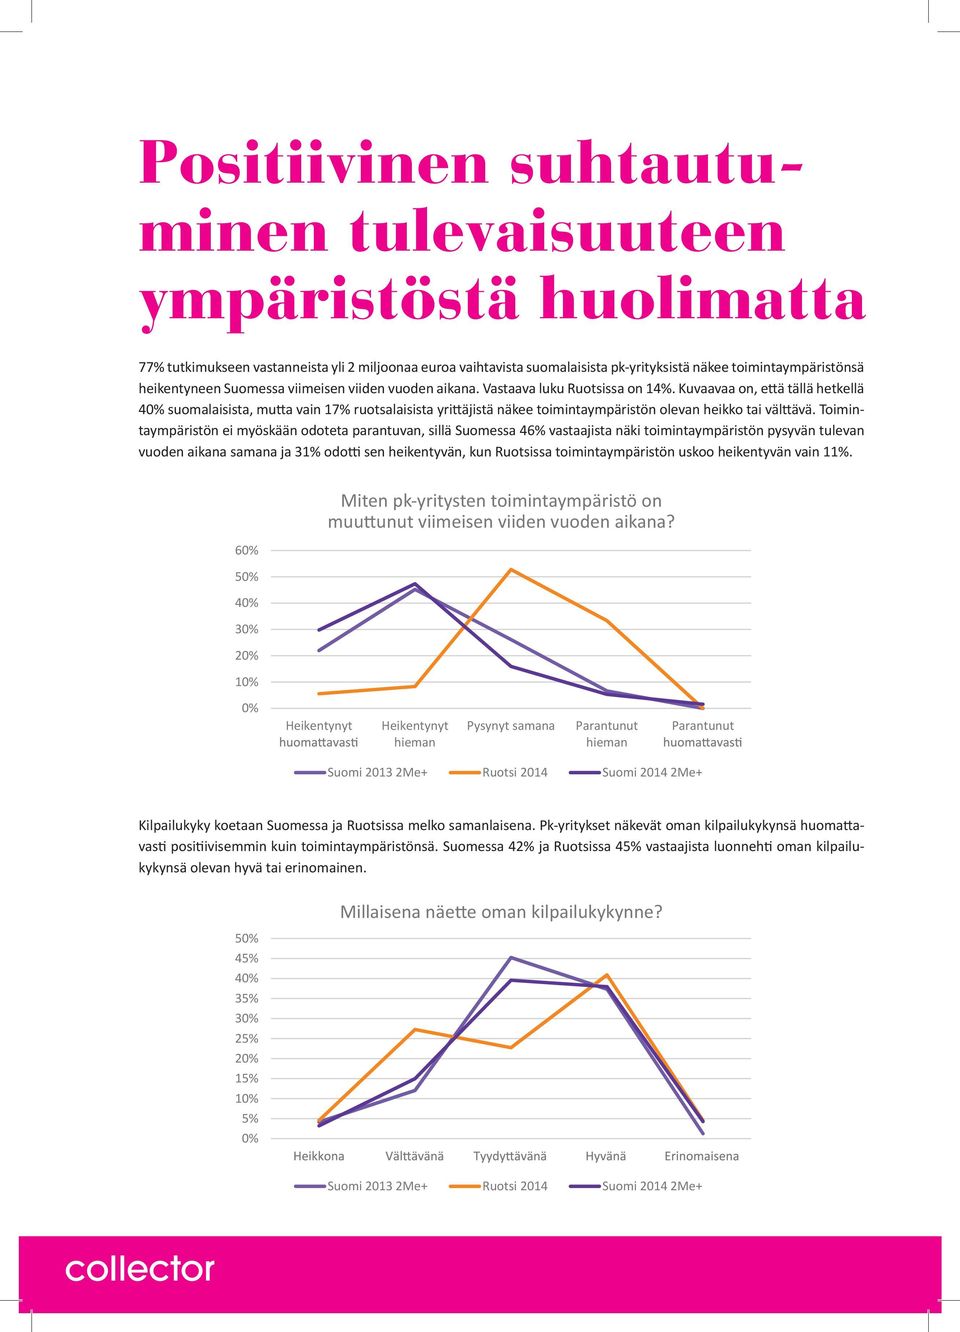 Kuvaavaa on, että tällä hetkellä suomalaisista, mutta vain 17% ruotsalaisista yrittäjistä näkee toimintaympäristön olevan heikko tai välttävä.